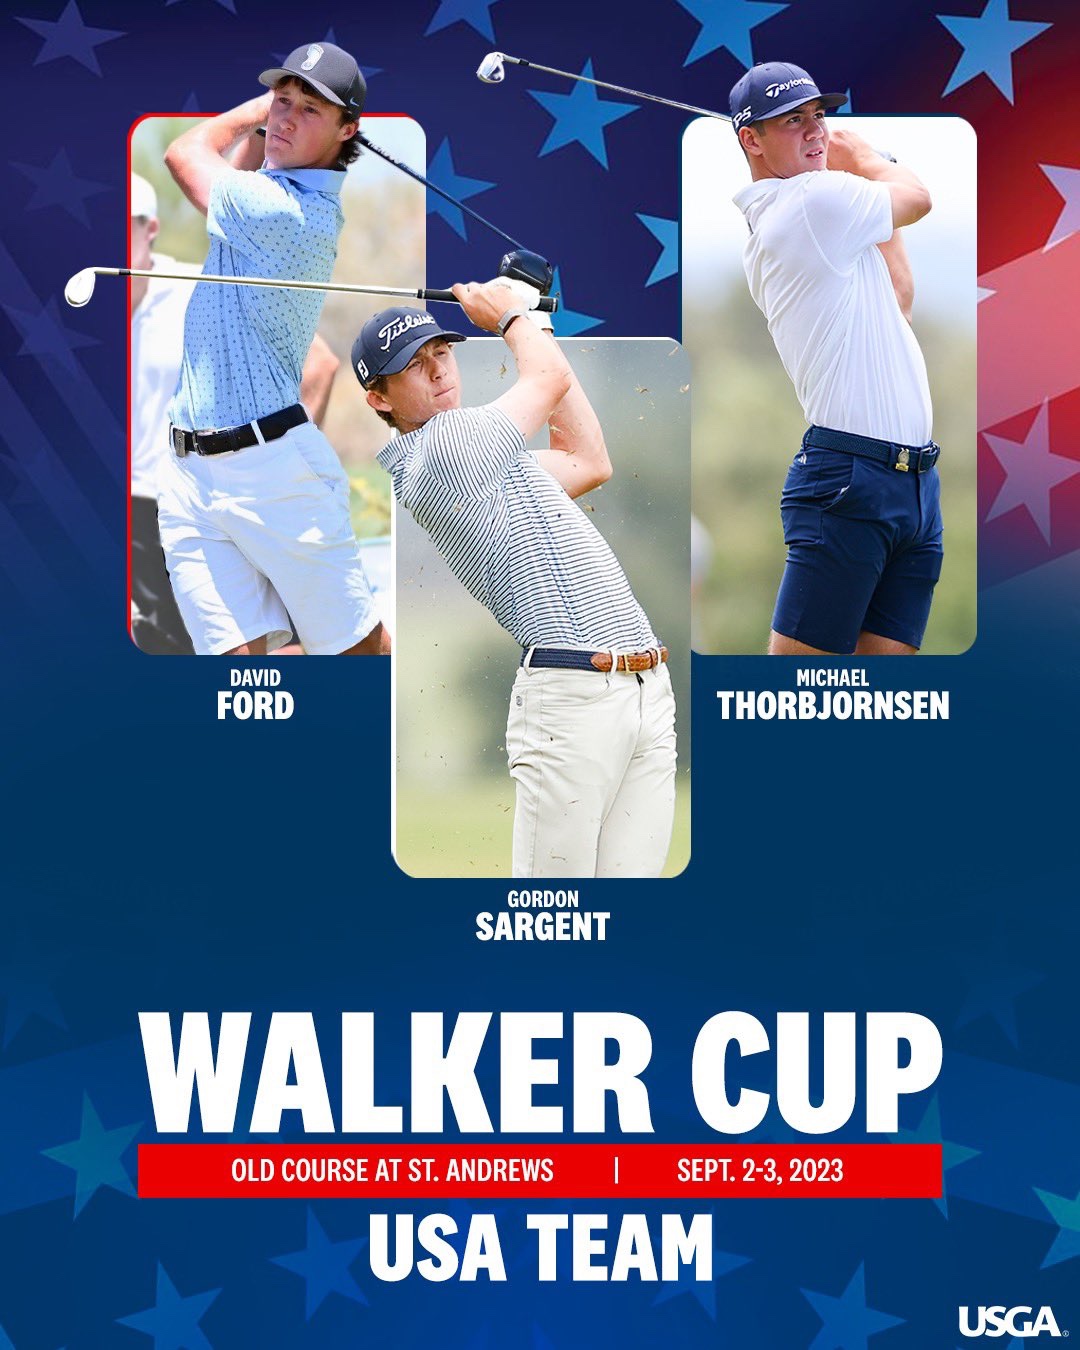 Walker Cup 2023 – Walker Cup